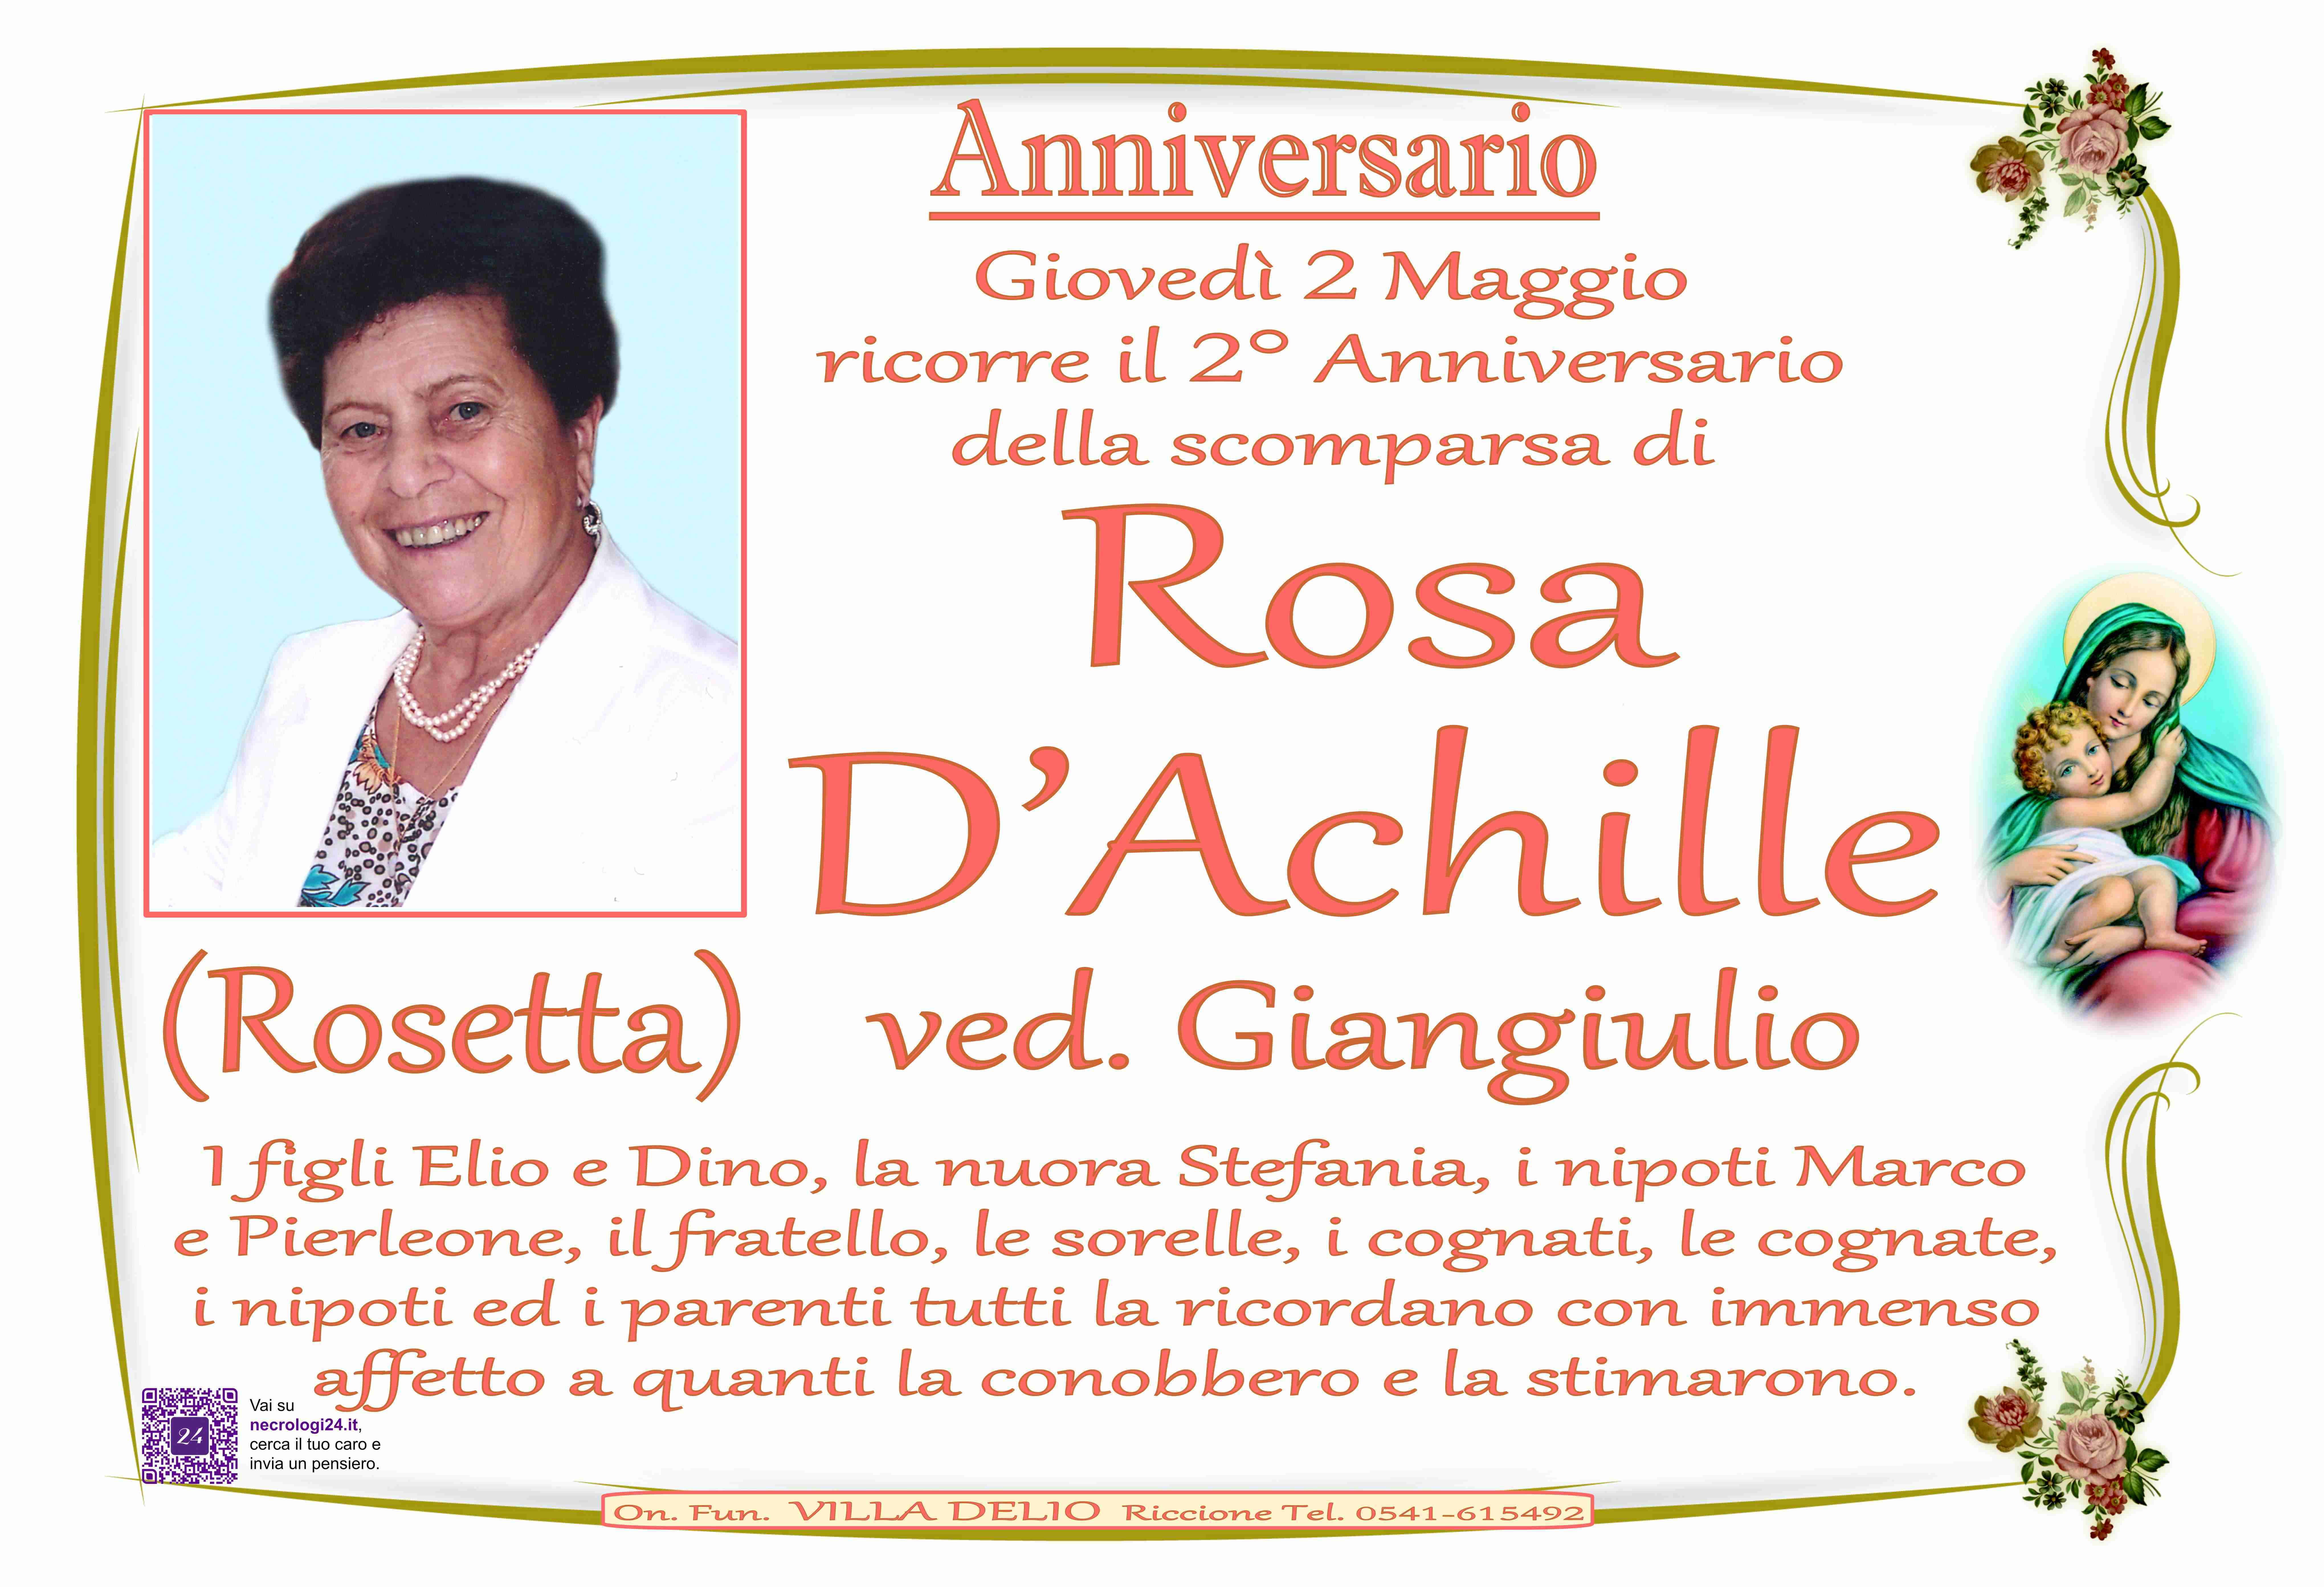 Rosa (Rosetta) D'Achille ved. Giangiulio